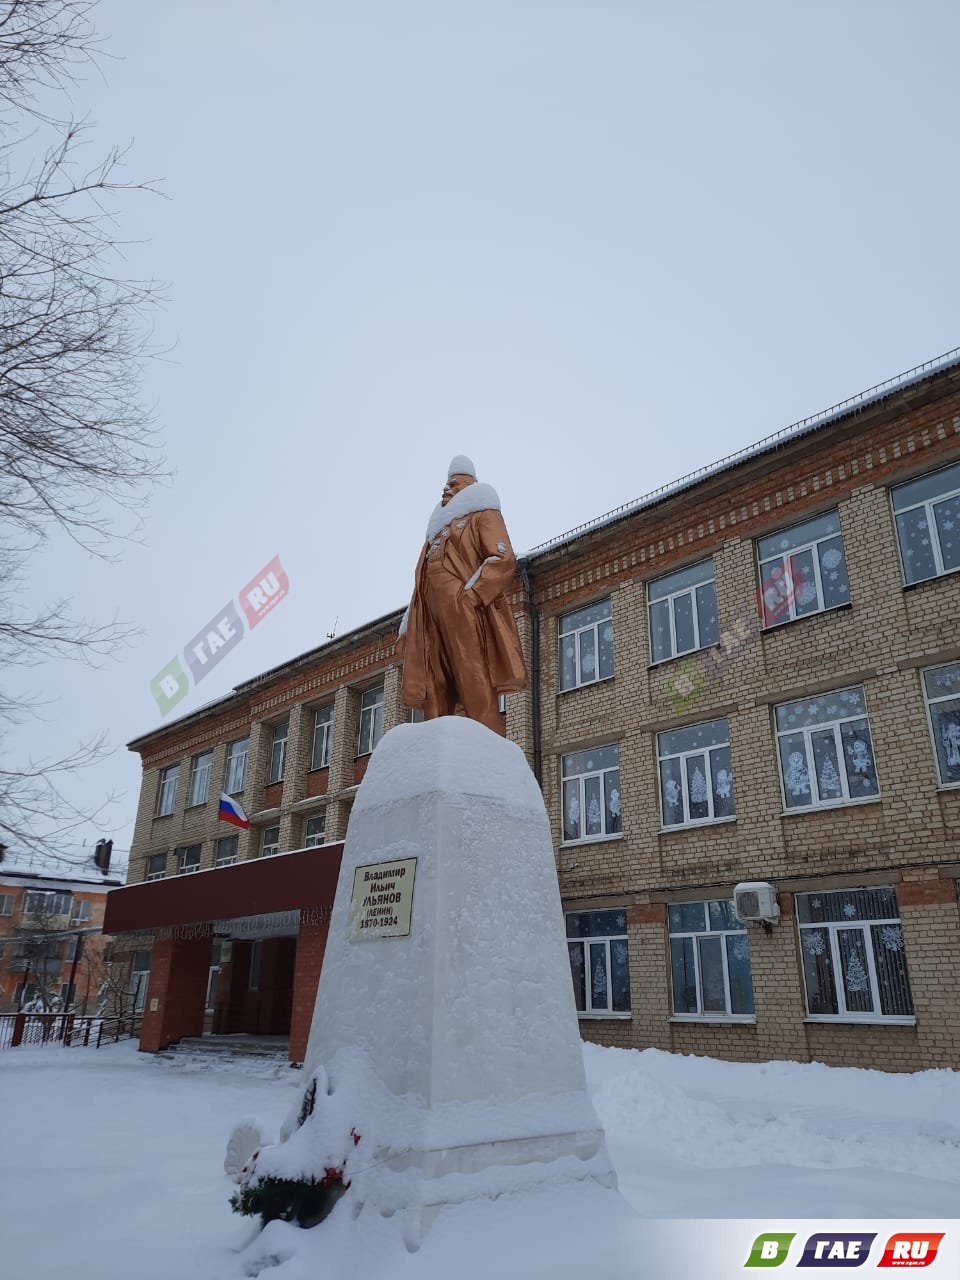 Снег превратил В.И. Ленина в новогодний персонаж